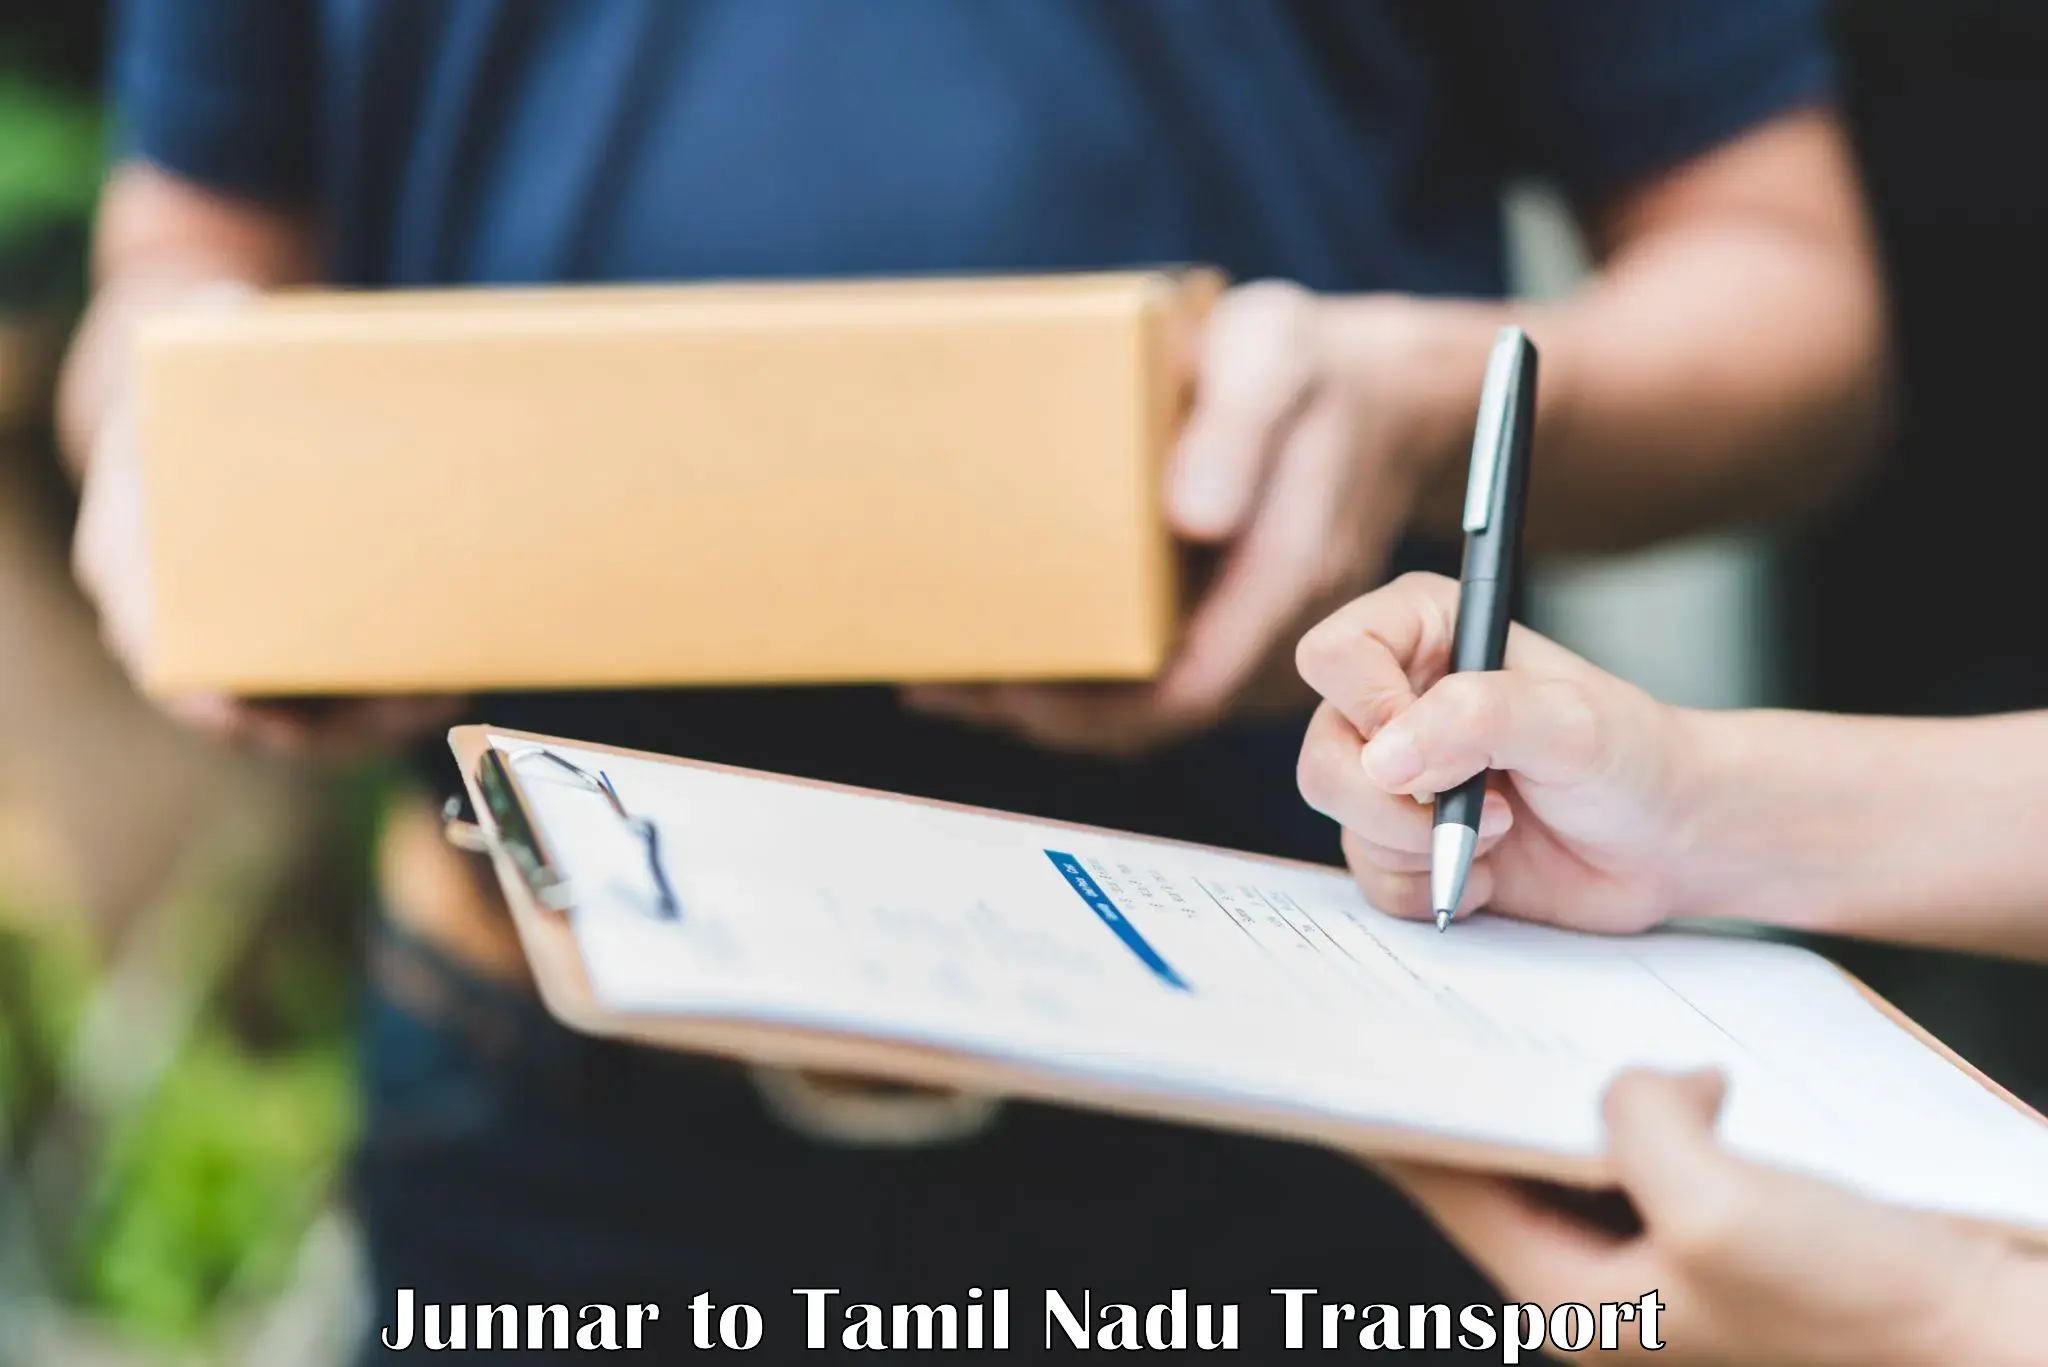 Commercial transport service Junnar to Sankarapuram